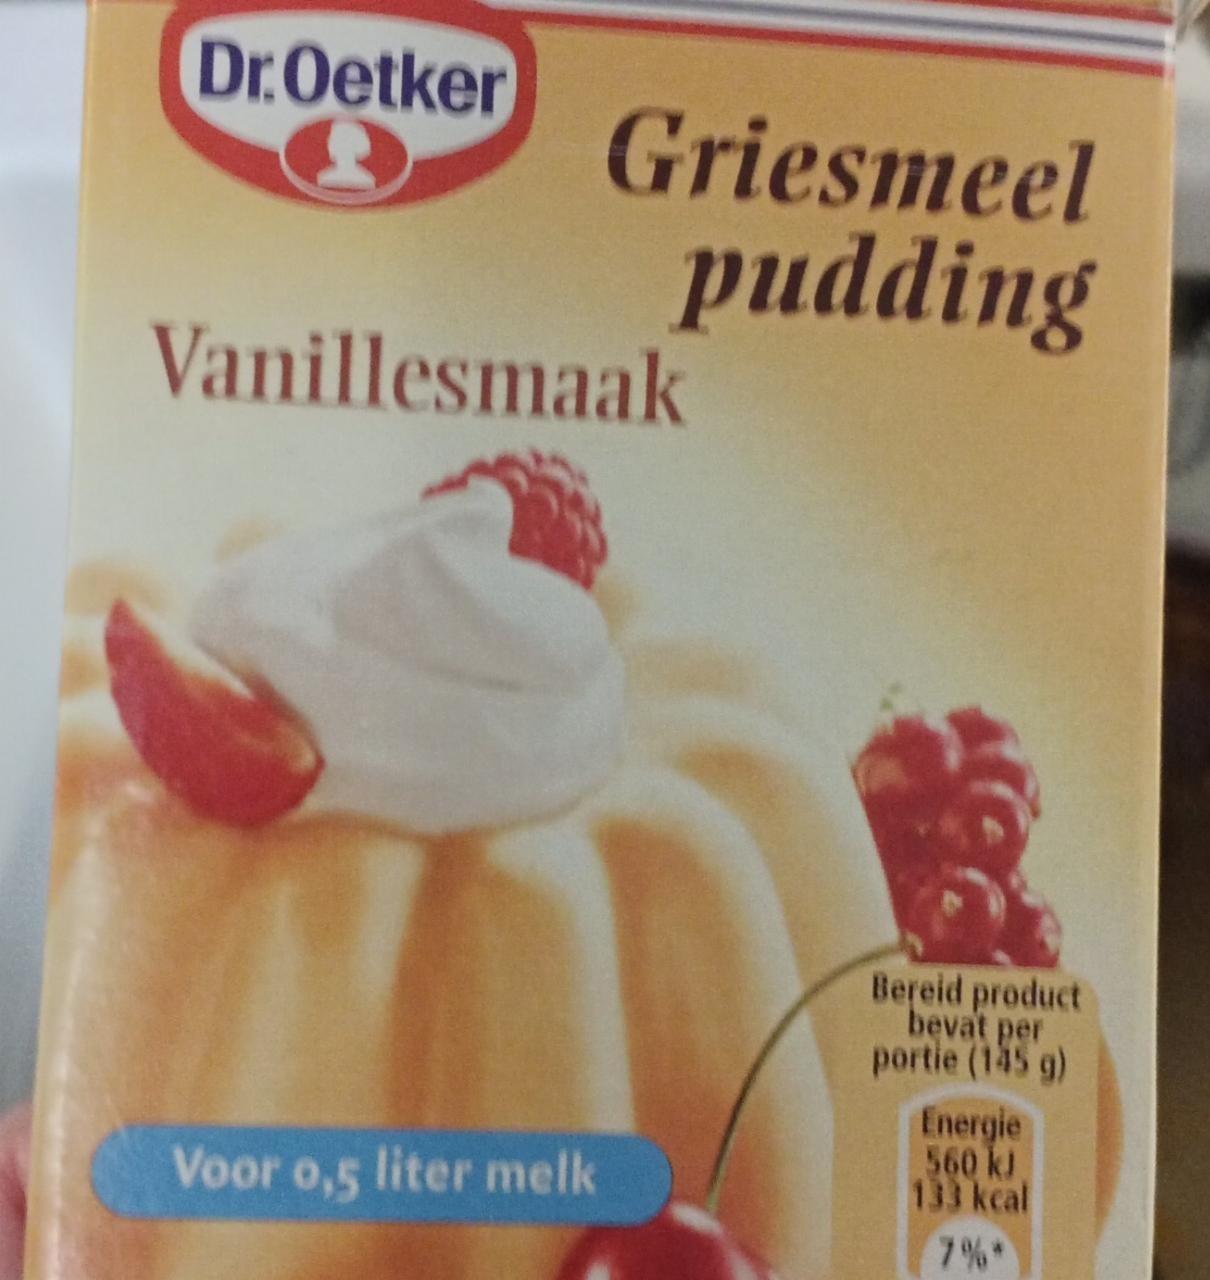 Fotografie - Ggriesmeel pudding Vanillesmaak Dr.Oetker